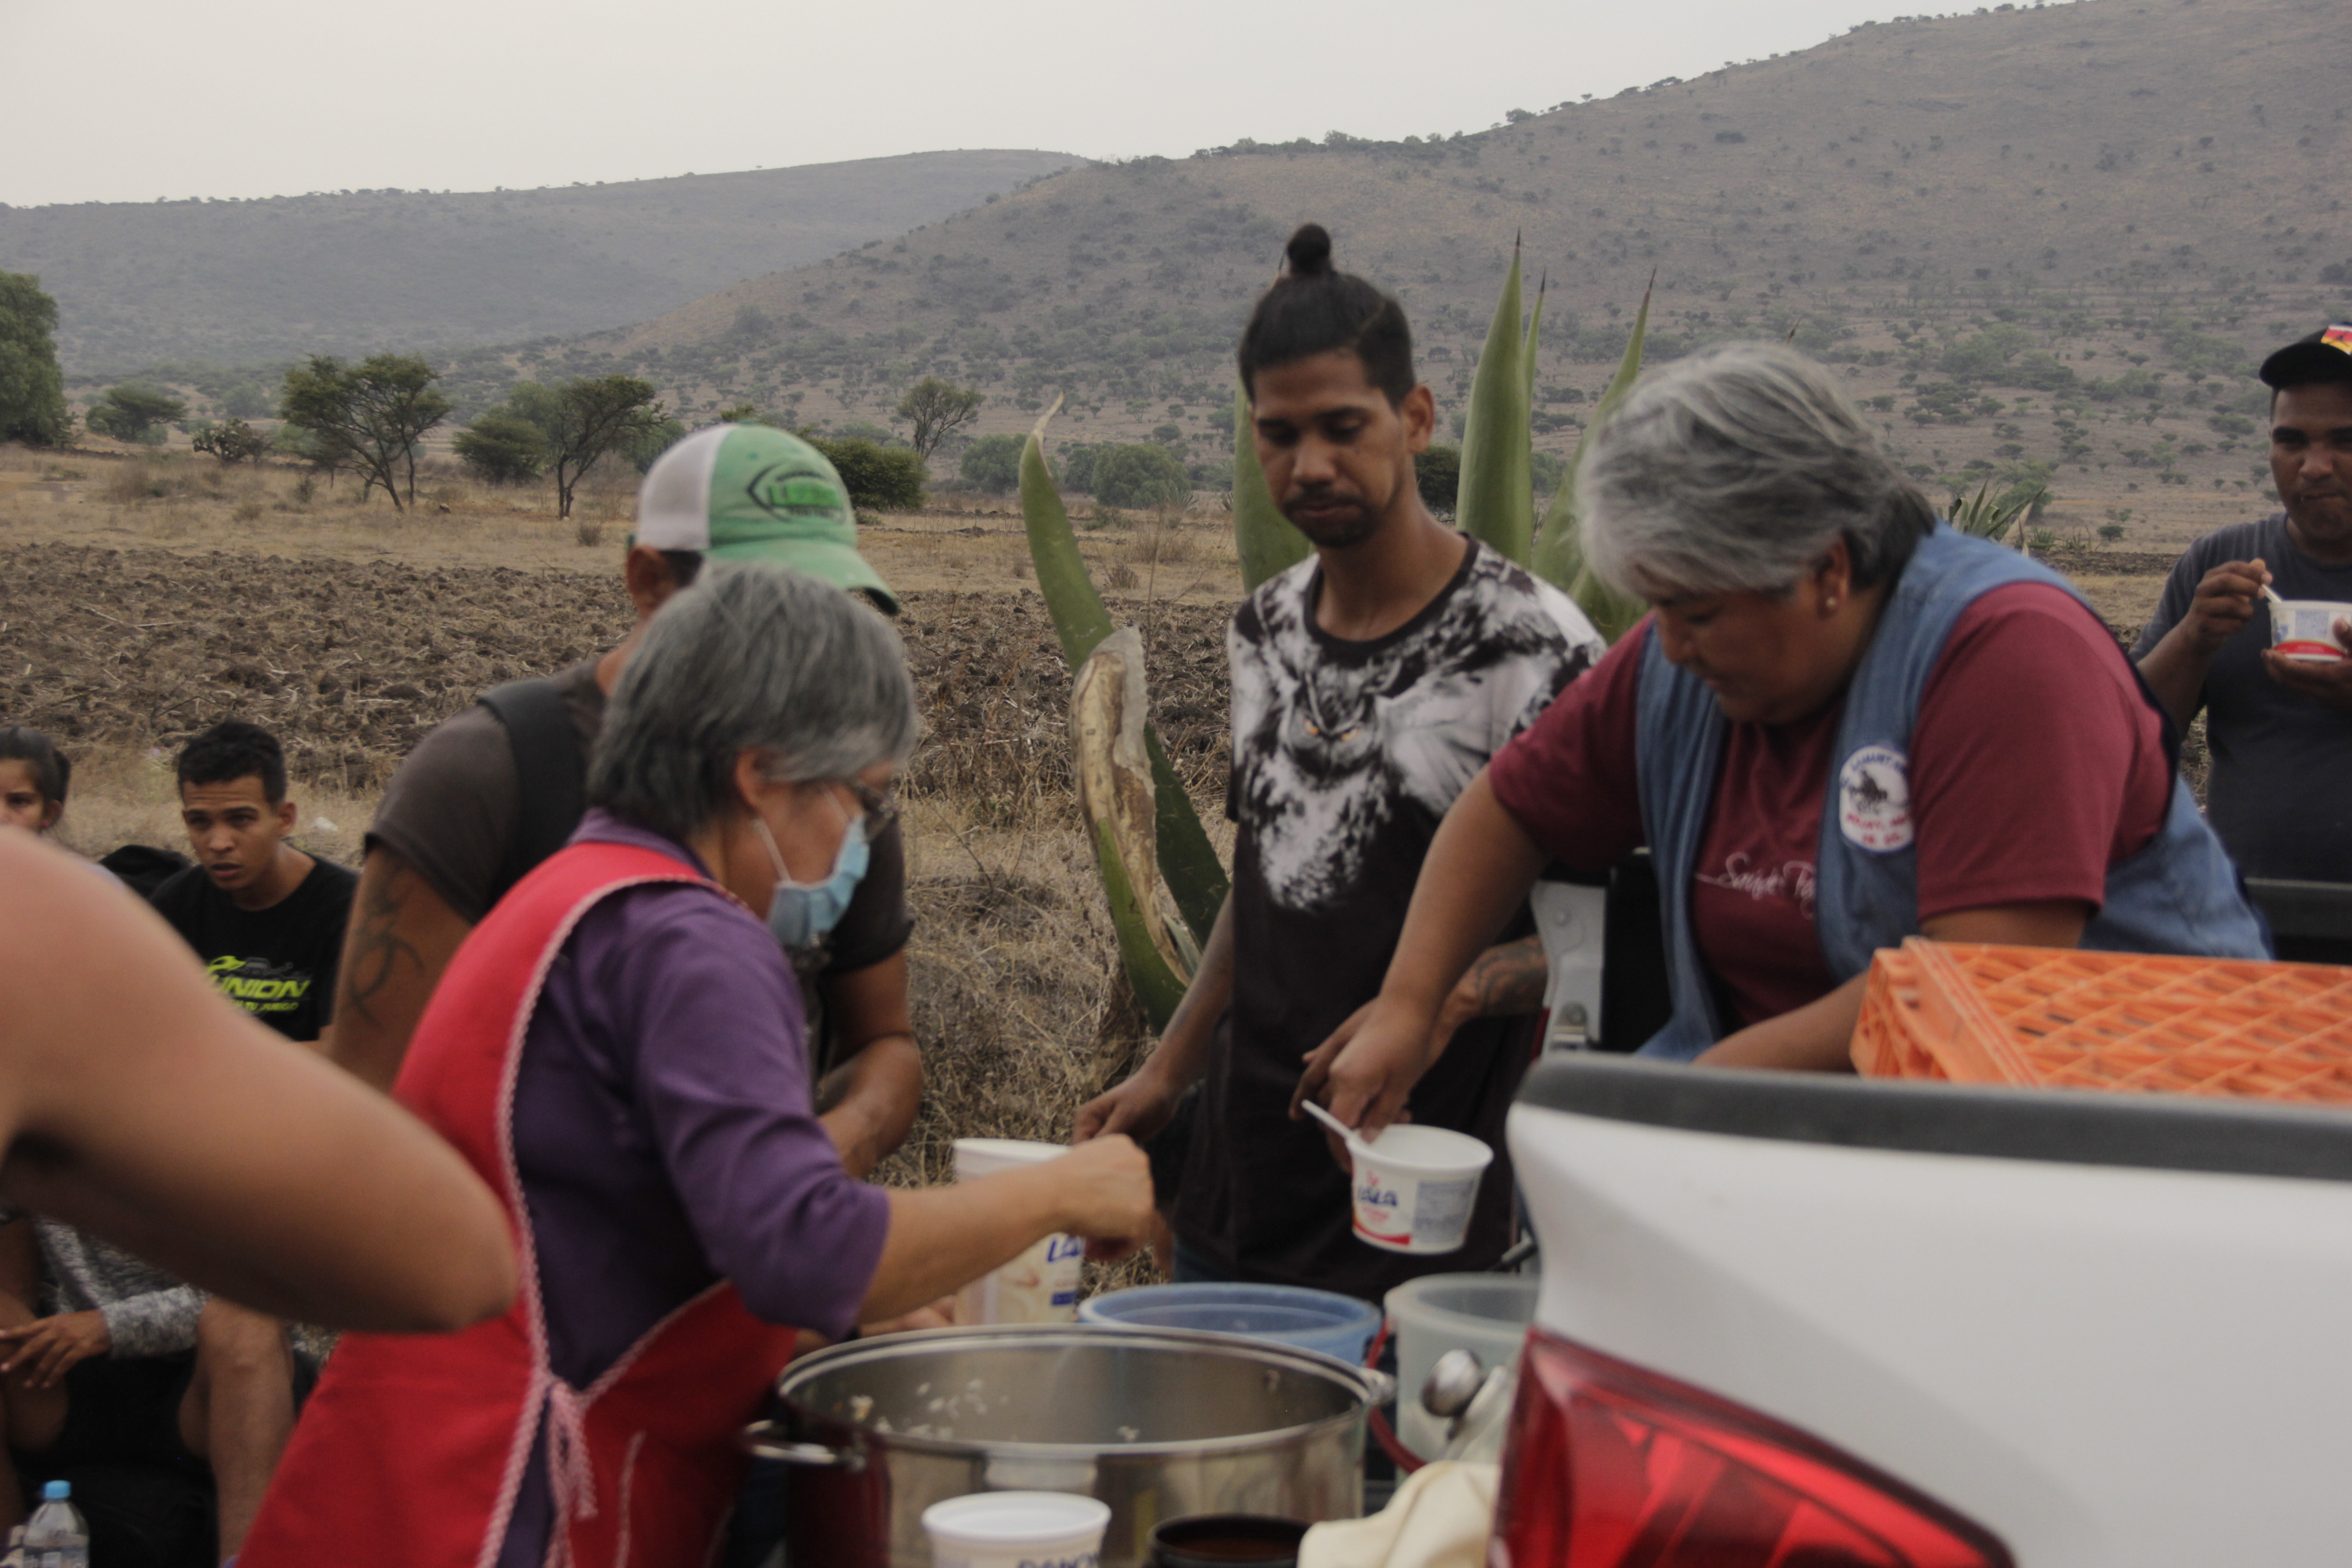 La Hna. María Luisa Silverio realiza recorridos habituales, en su automóvil, por donde transcurren las vías del tren en el estado de Hidalgo, México, para llevar alimentos a las personas en contexto de movilidad. (Foto: Ángel Espa)